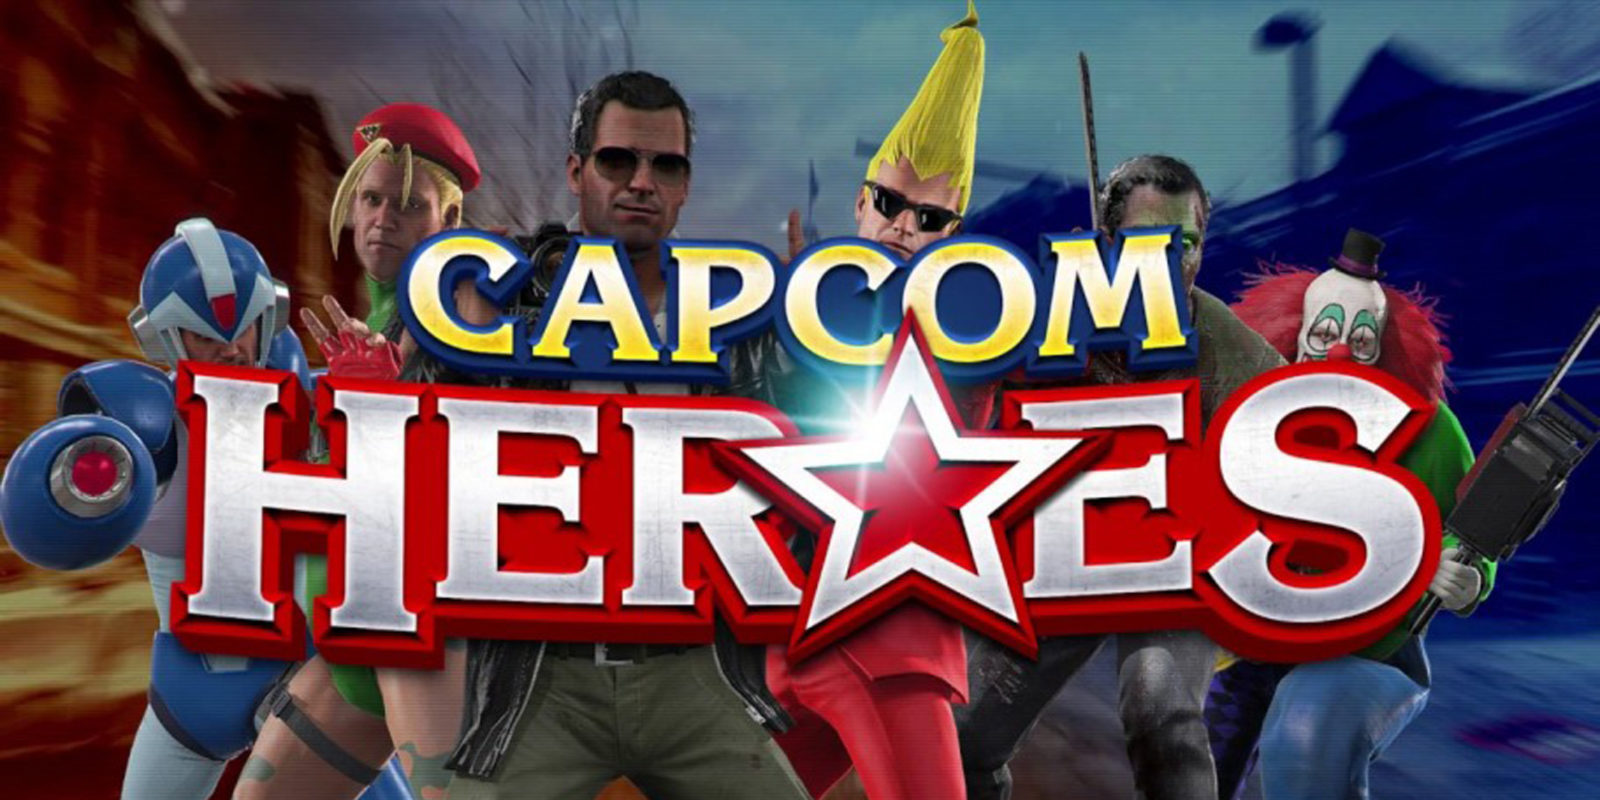 'Dead Rising 4' presenta a lo loco su modo Capcom Heroes